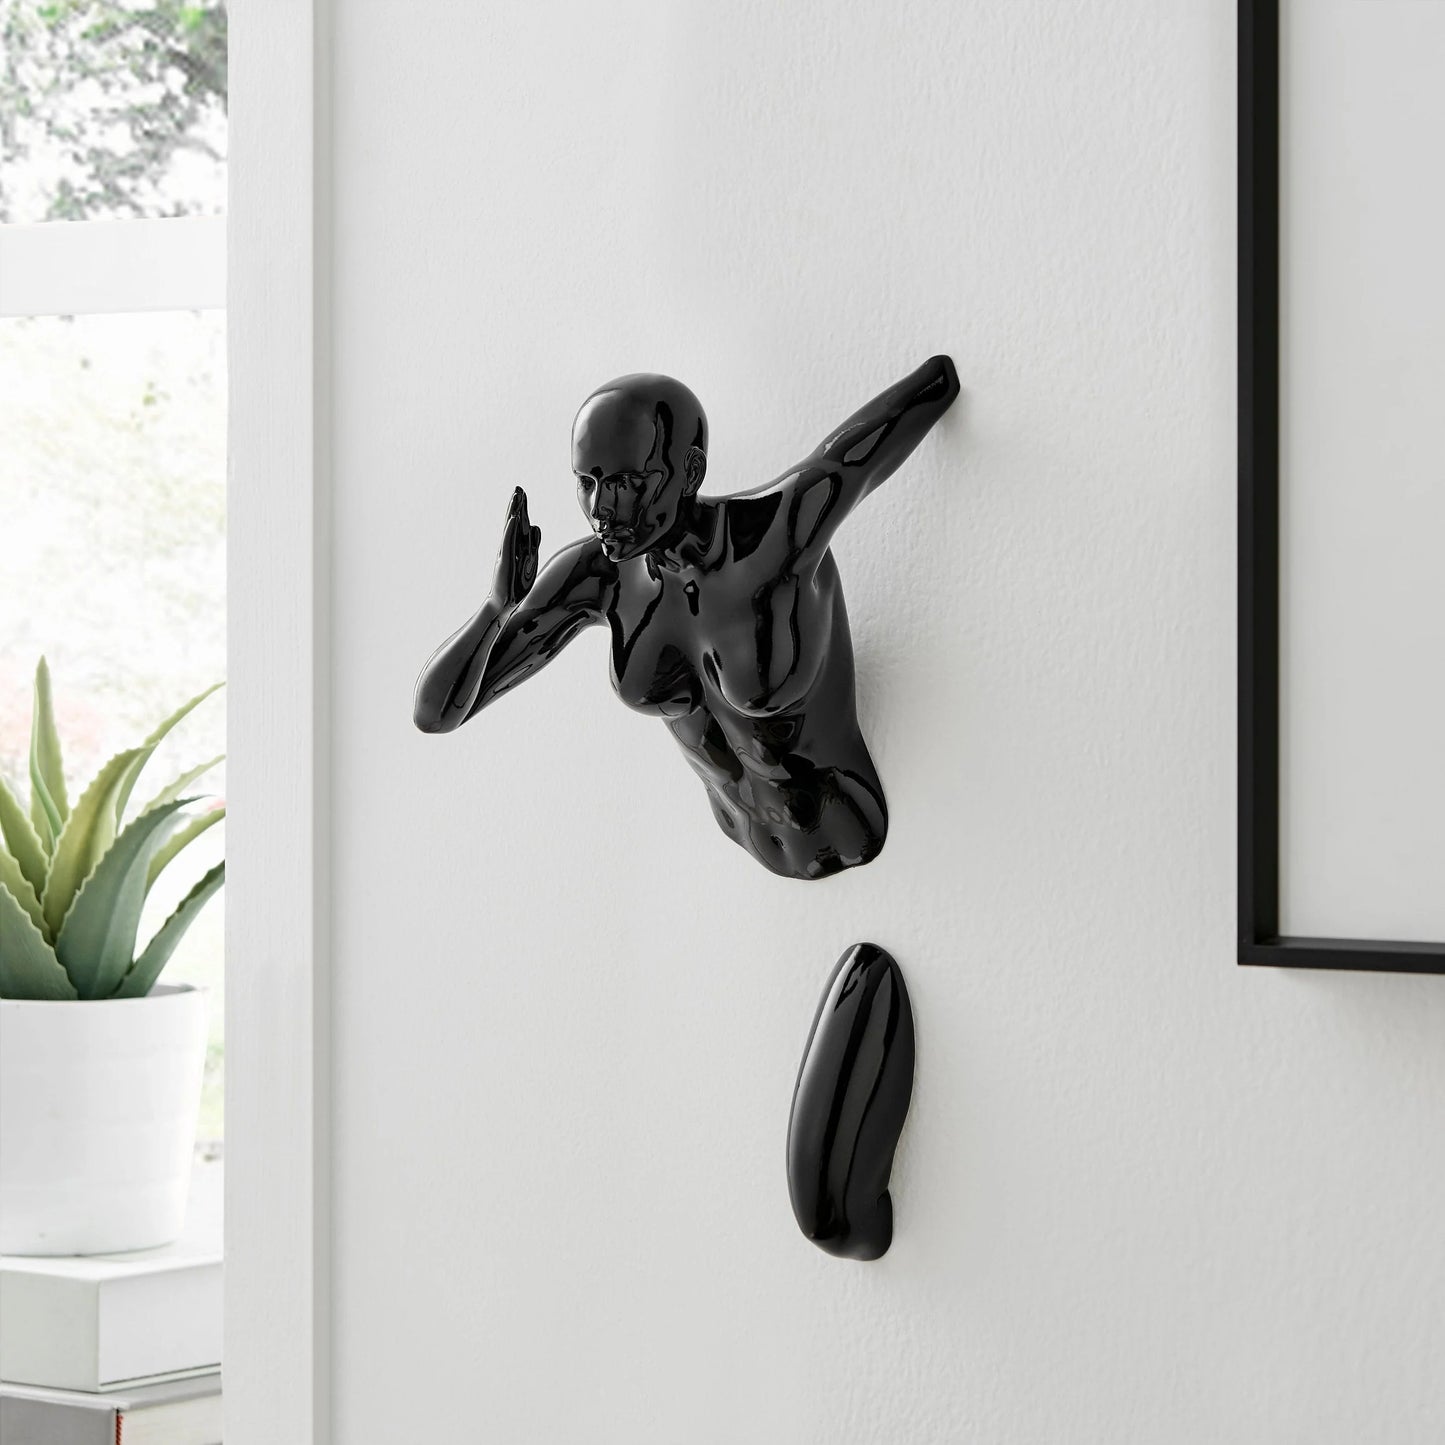 Finesse Decor Black Wall Runner 13" Woman Sculpture 2